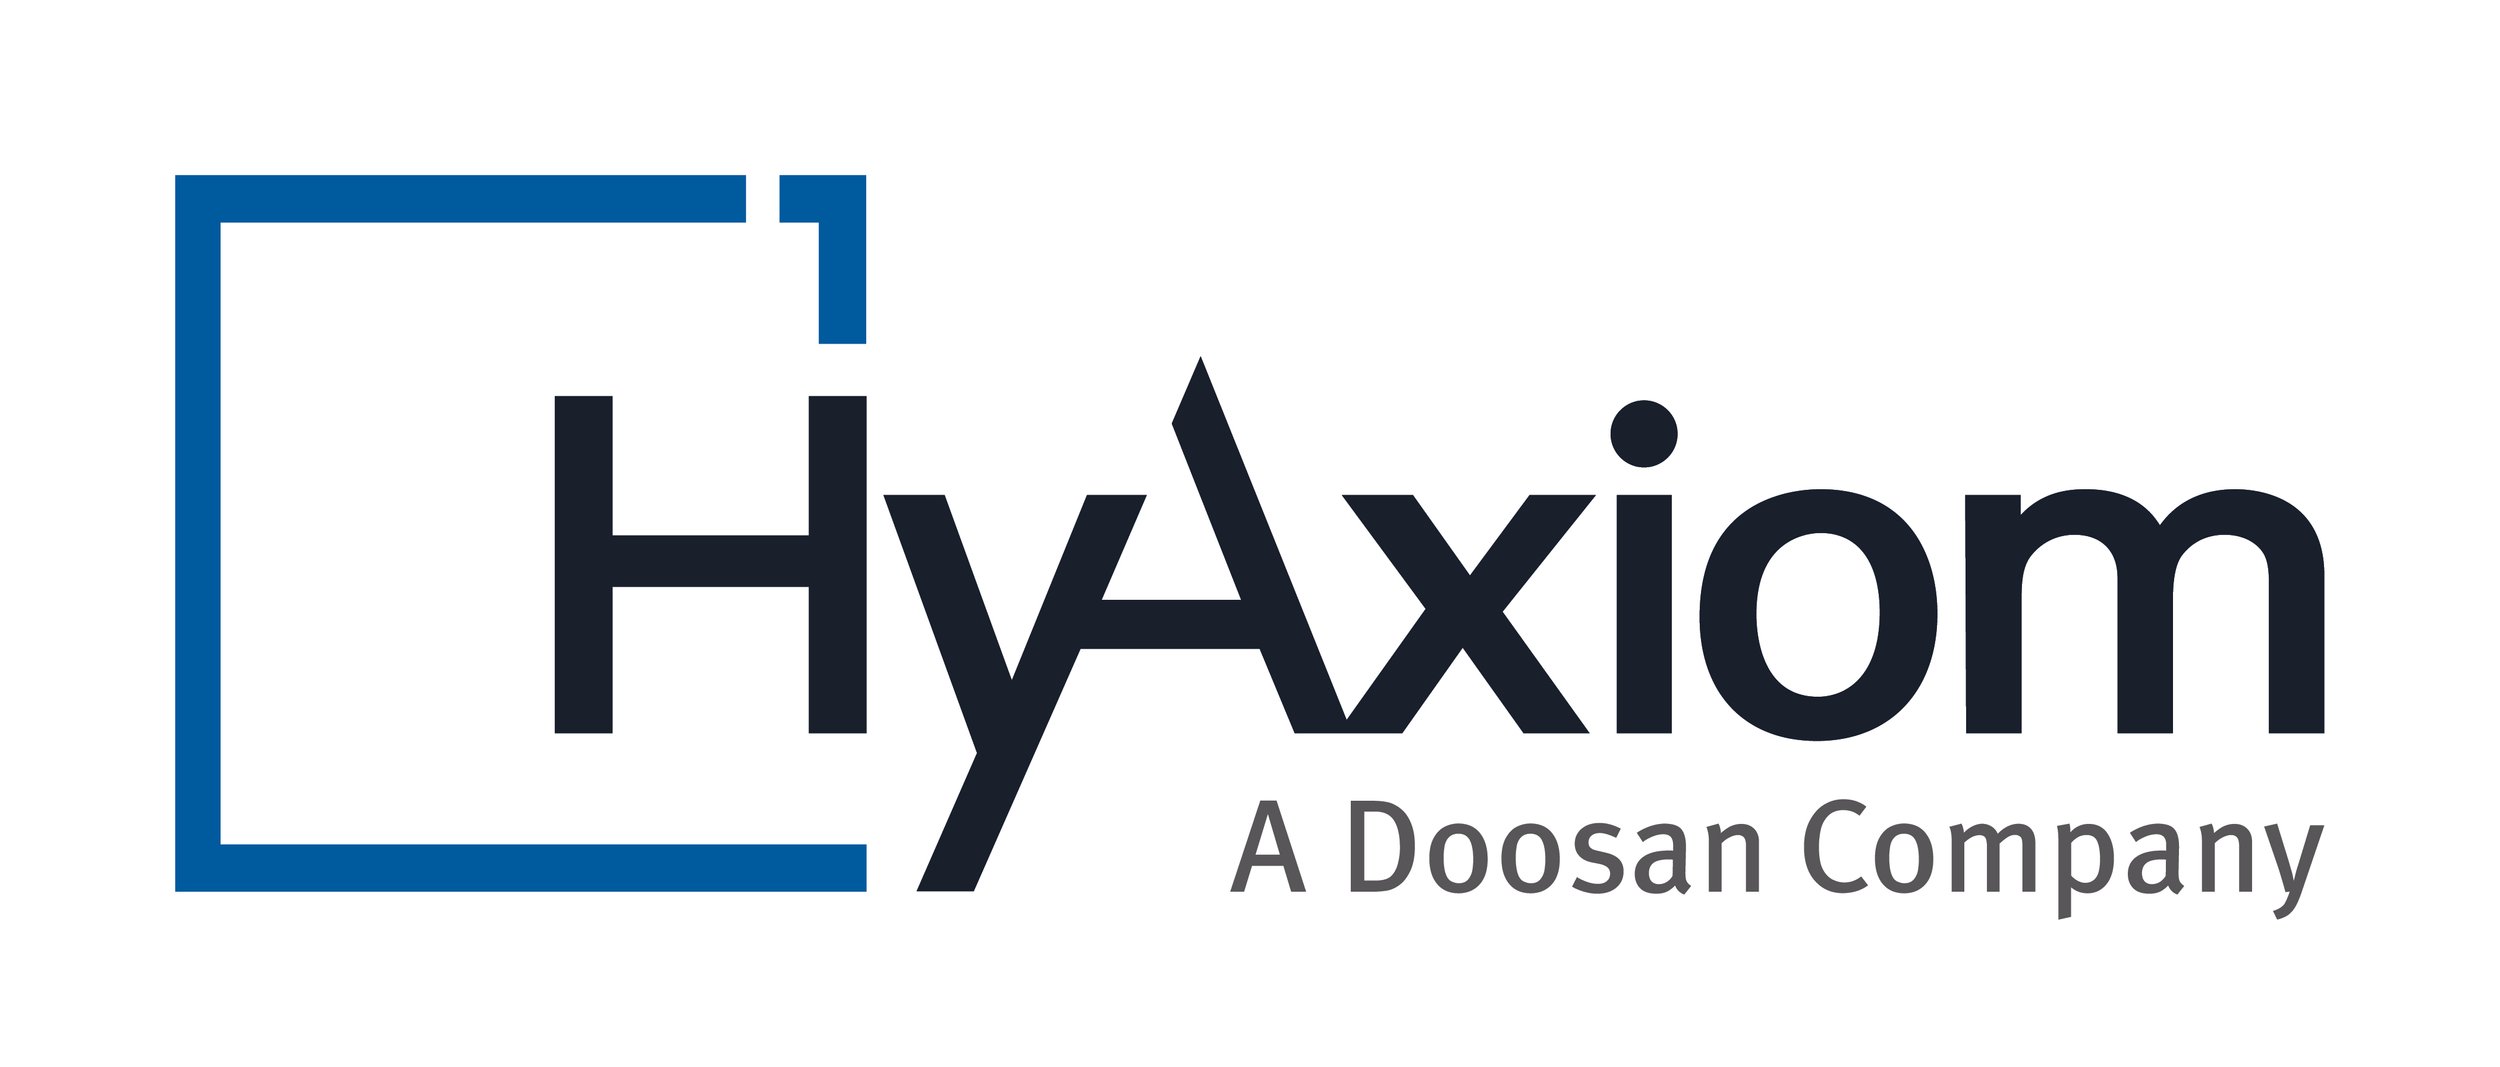 Hyaxiom -Logo.jpg